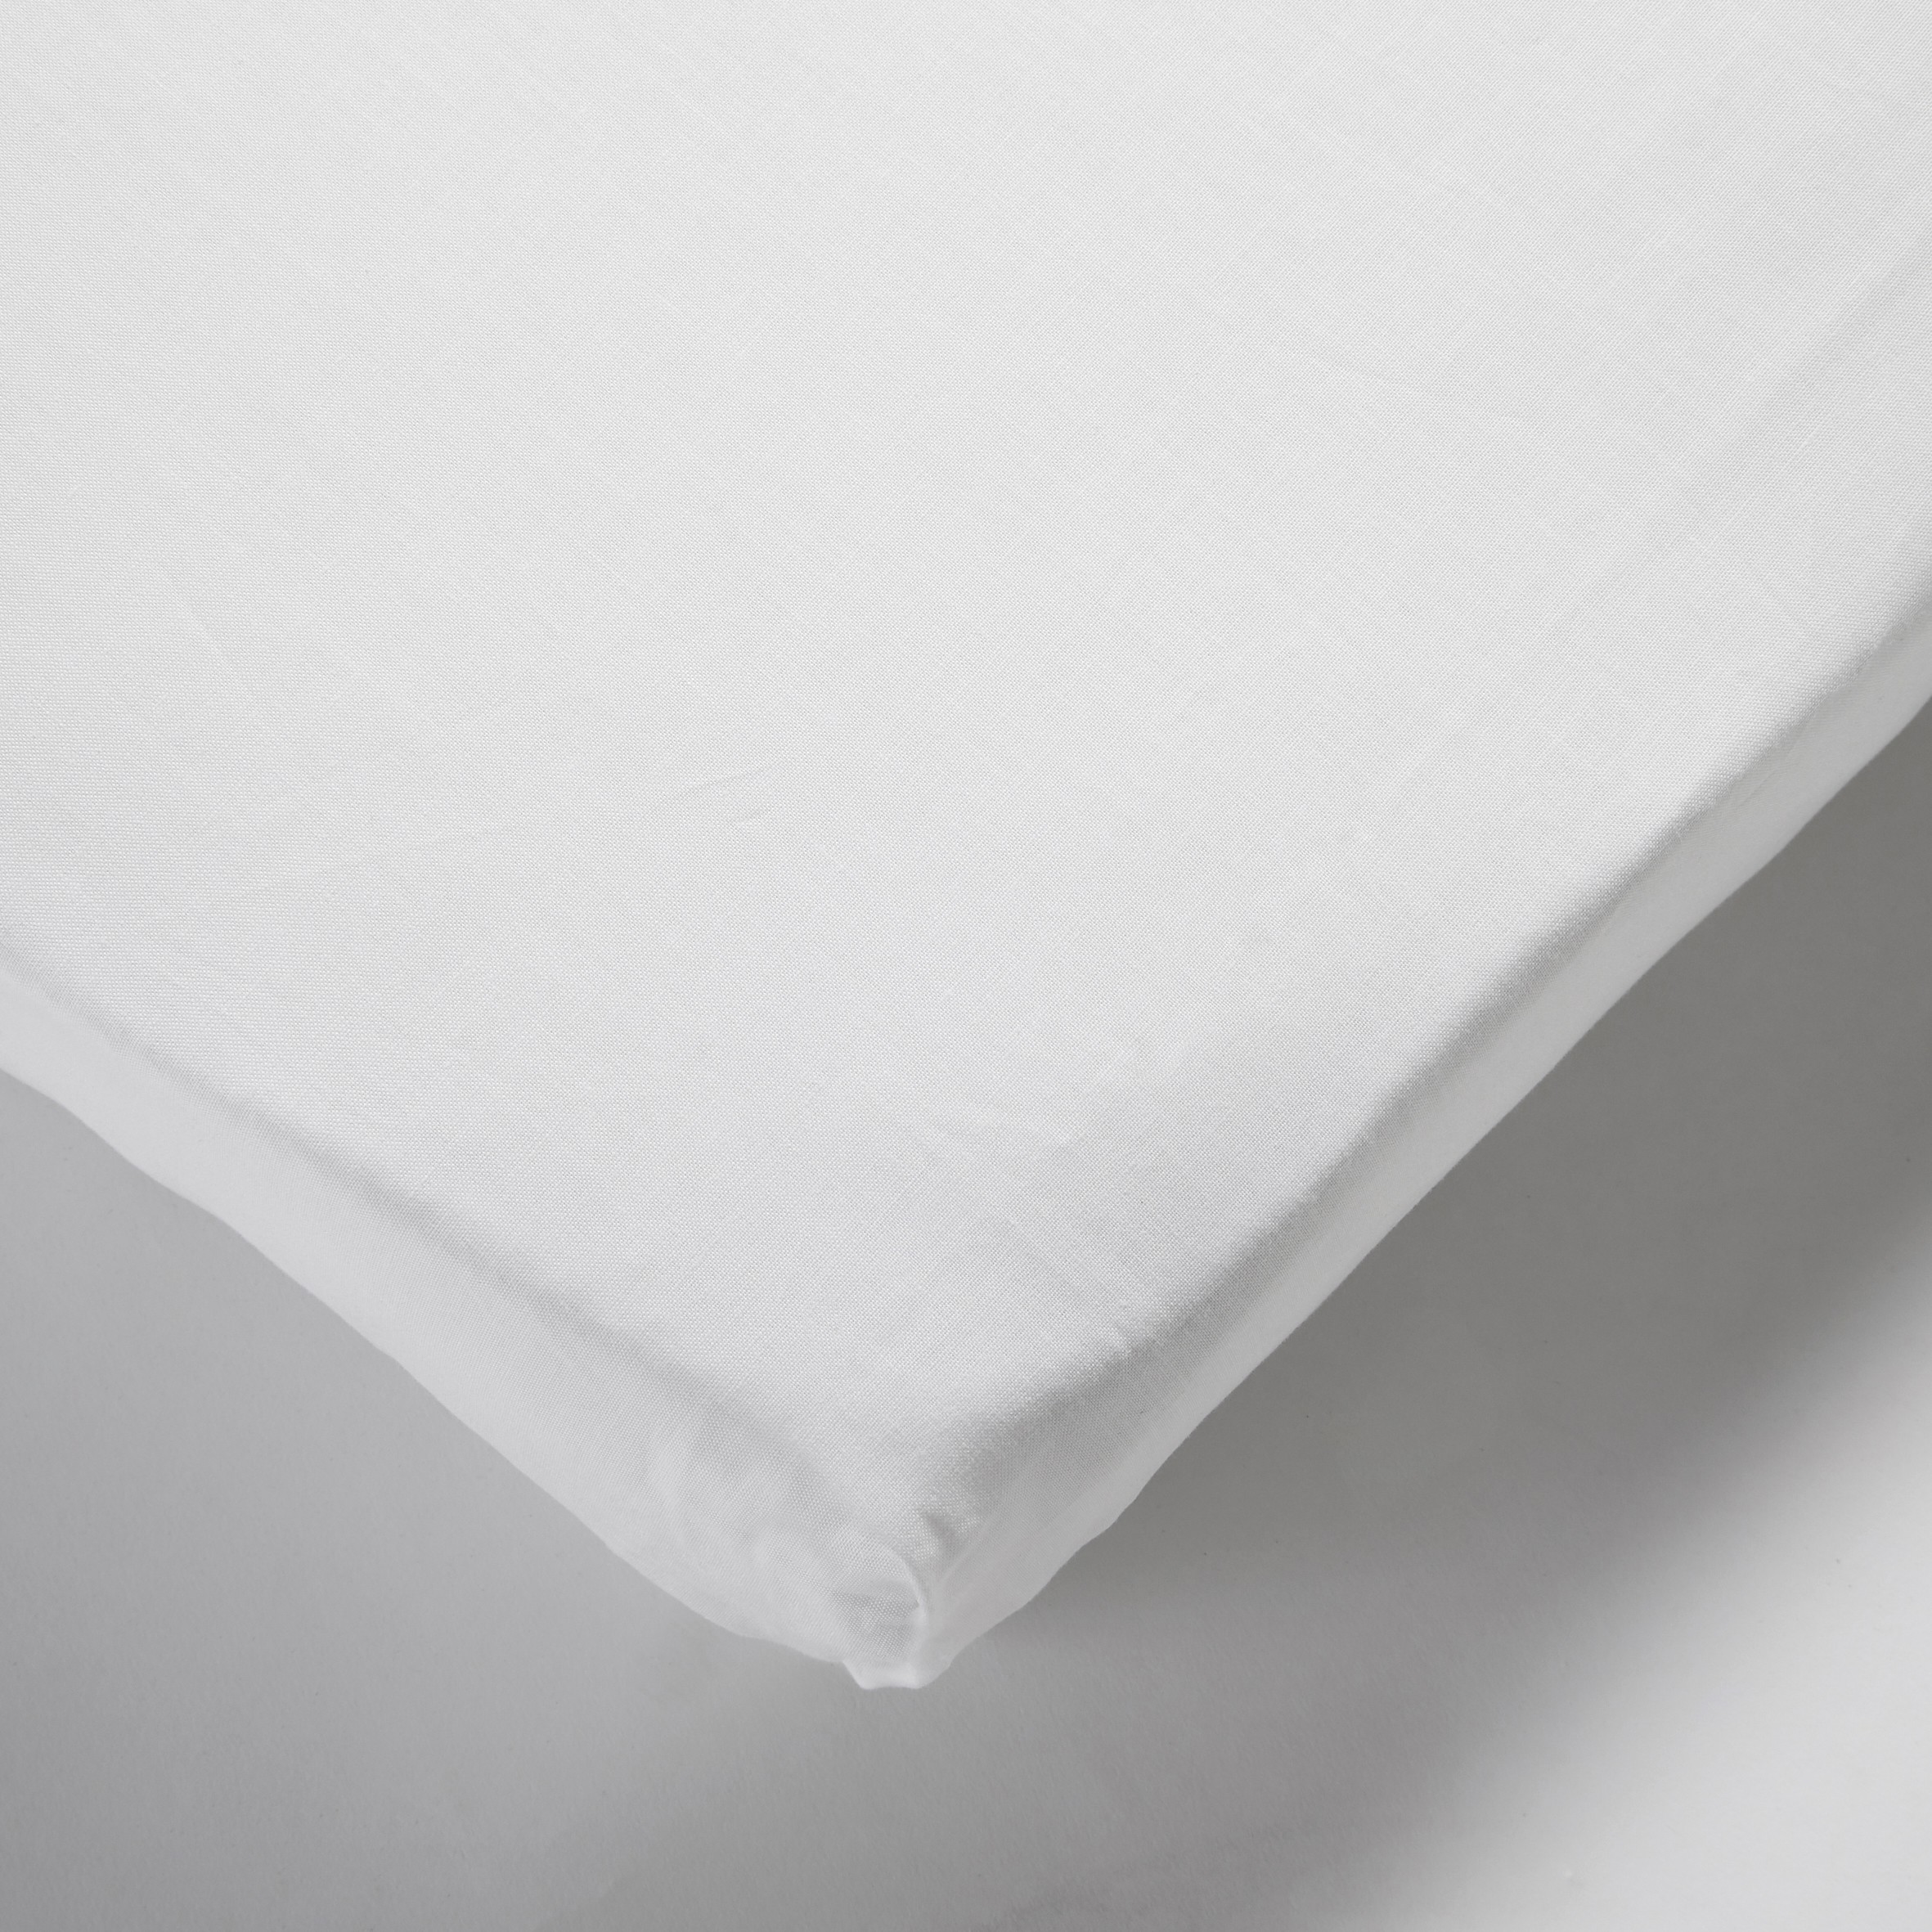 Protège-matelas en forme de drap housse coton blanc 160x200 cm SONGE